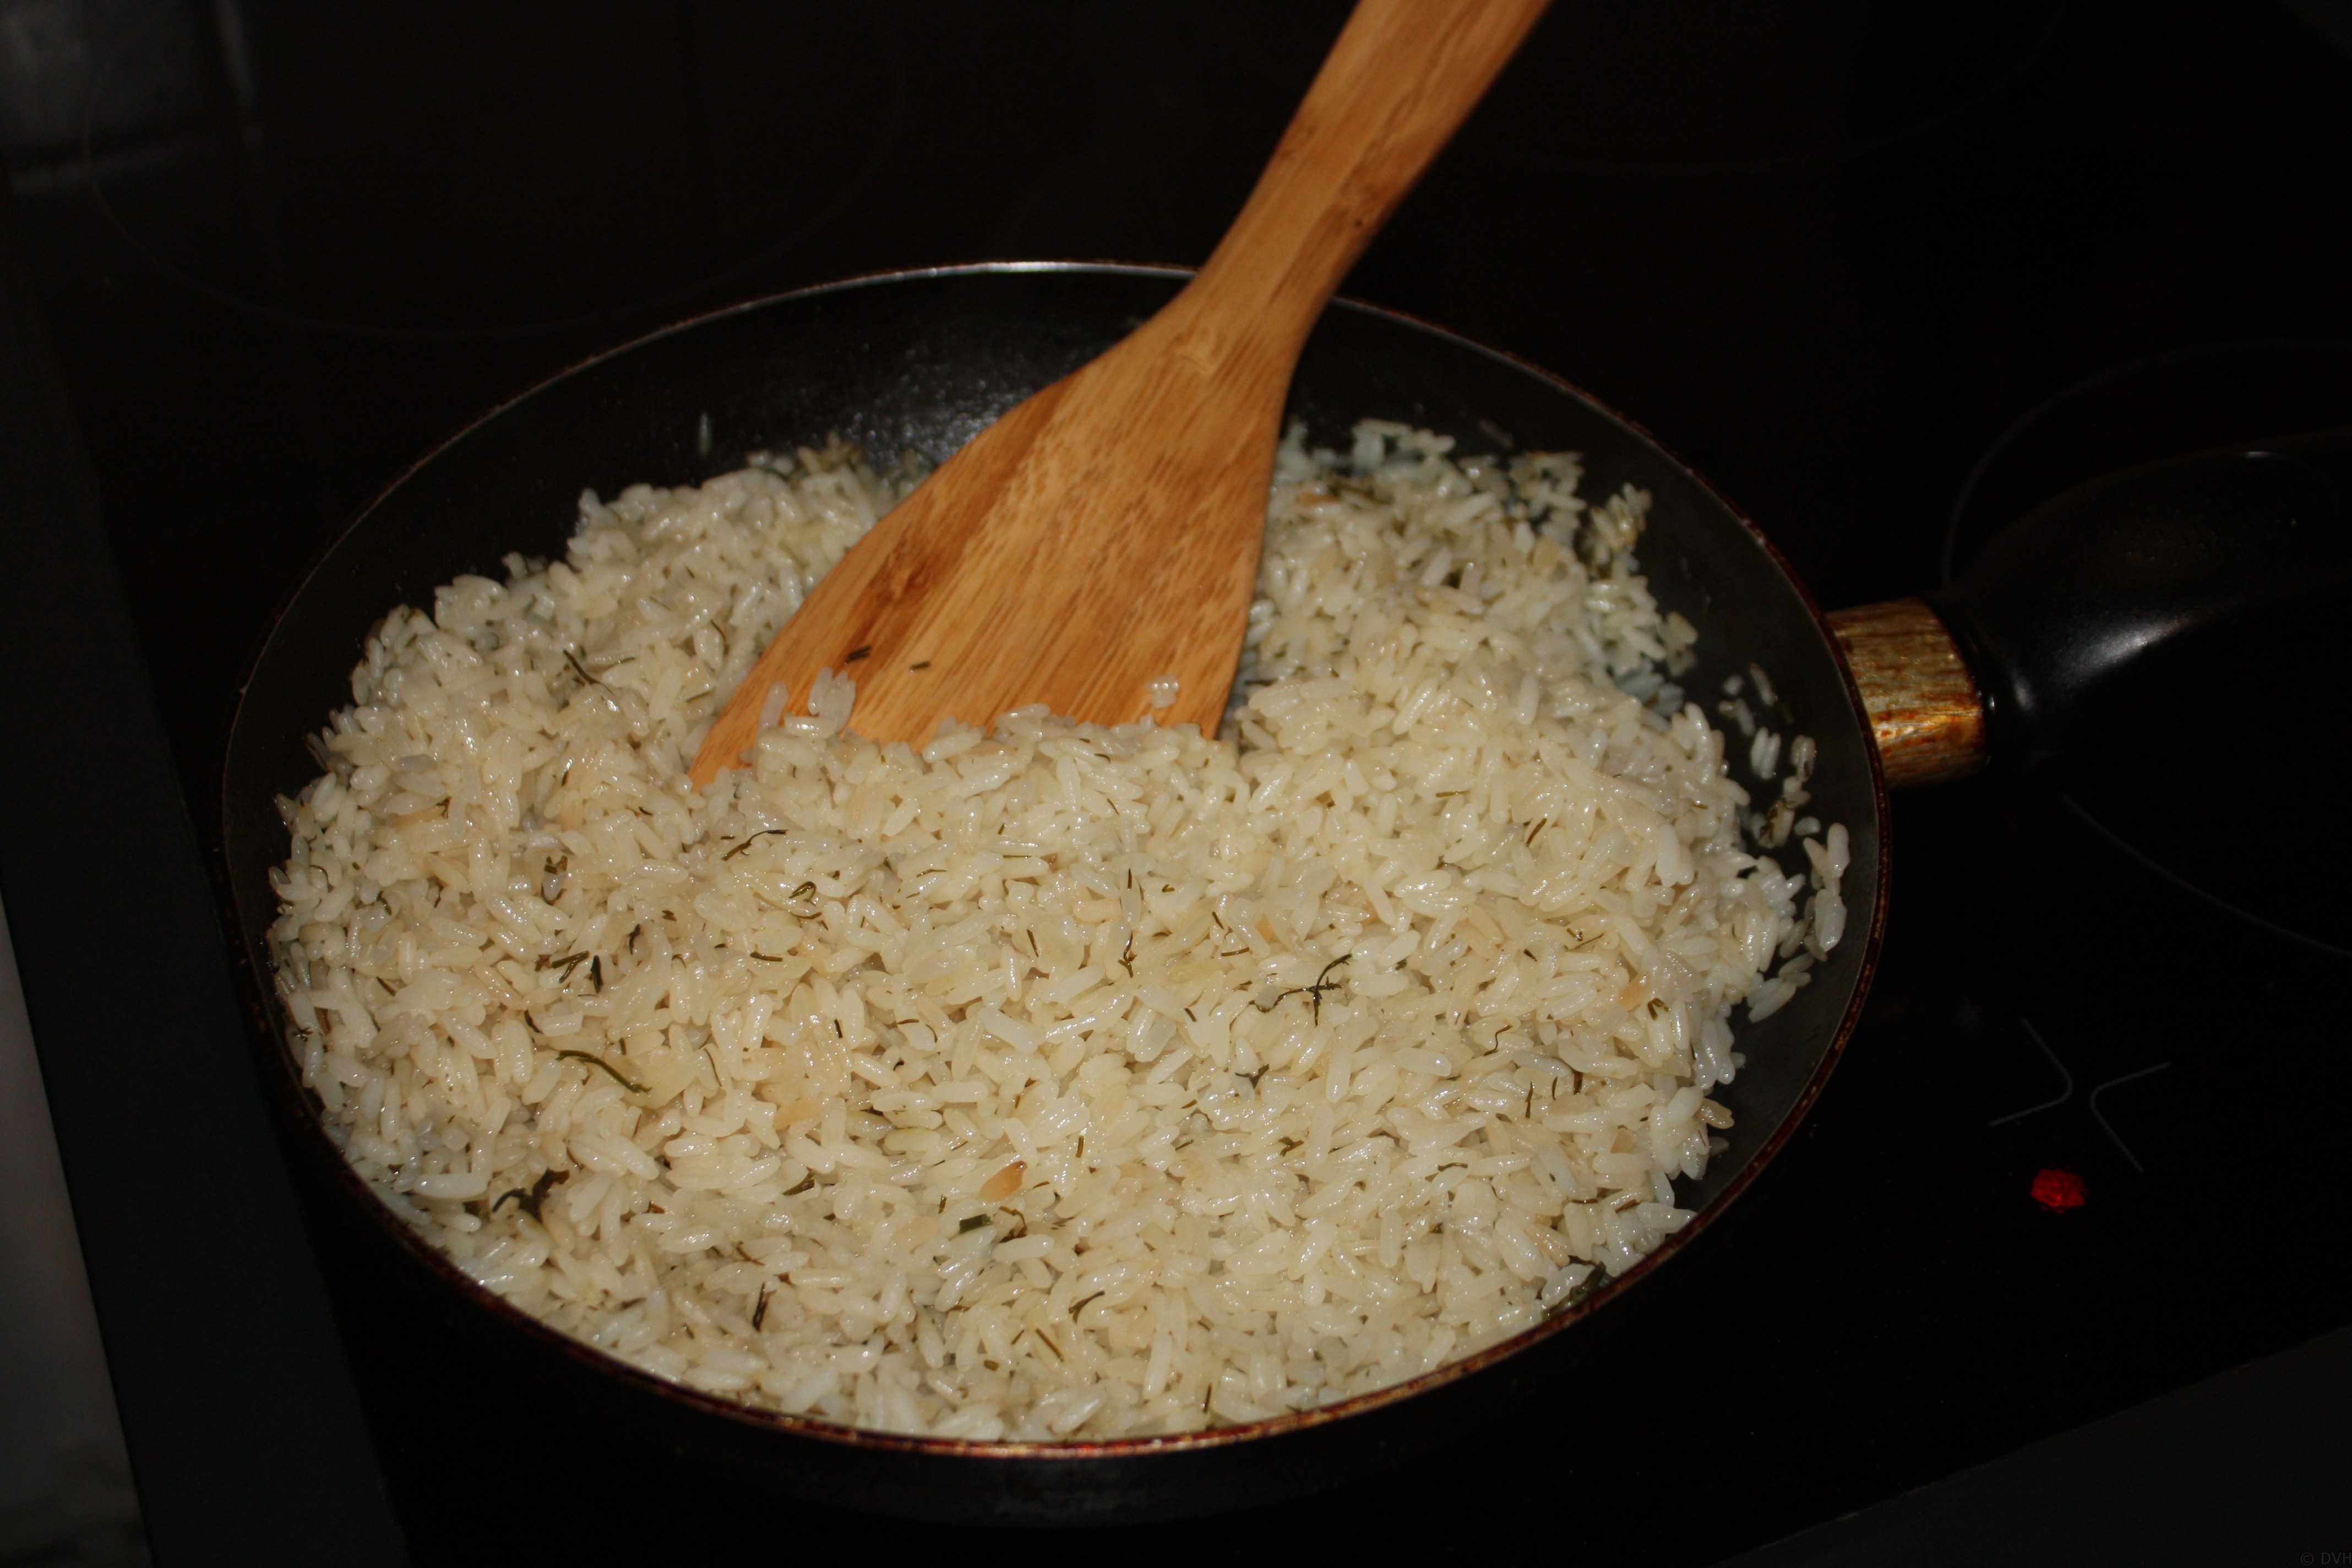 Как подготовить рис для плова. Рис басмати вареный. Рис басмати приготовленный. Пропорции риса басмати и воды. Пропорции риса басмати и воды для плова.